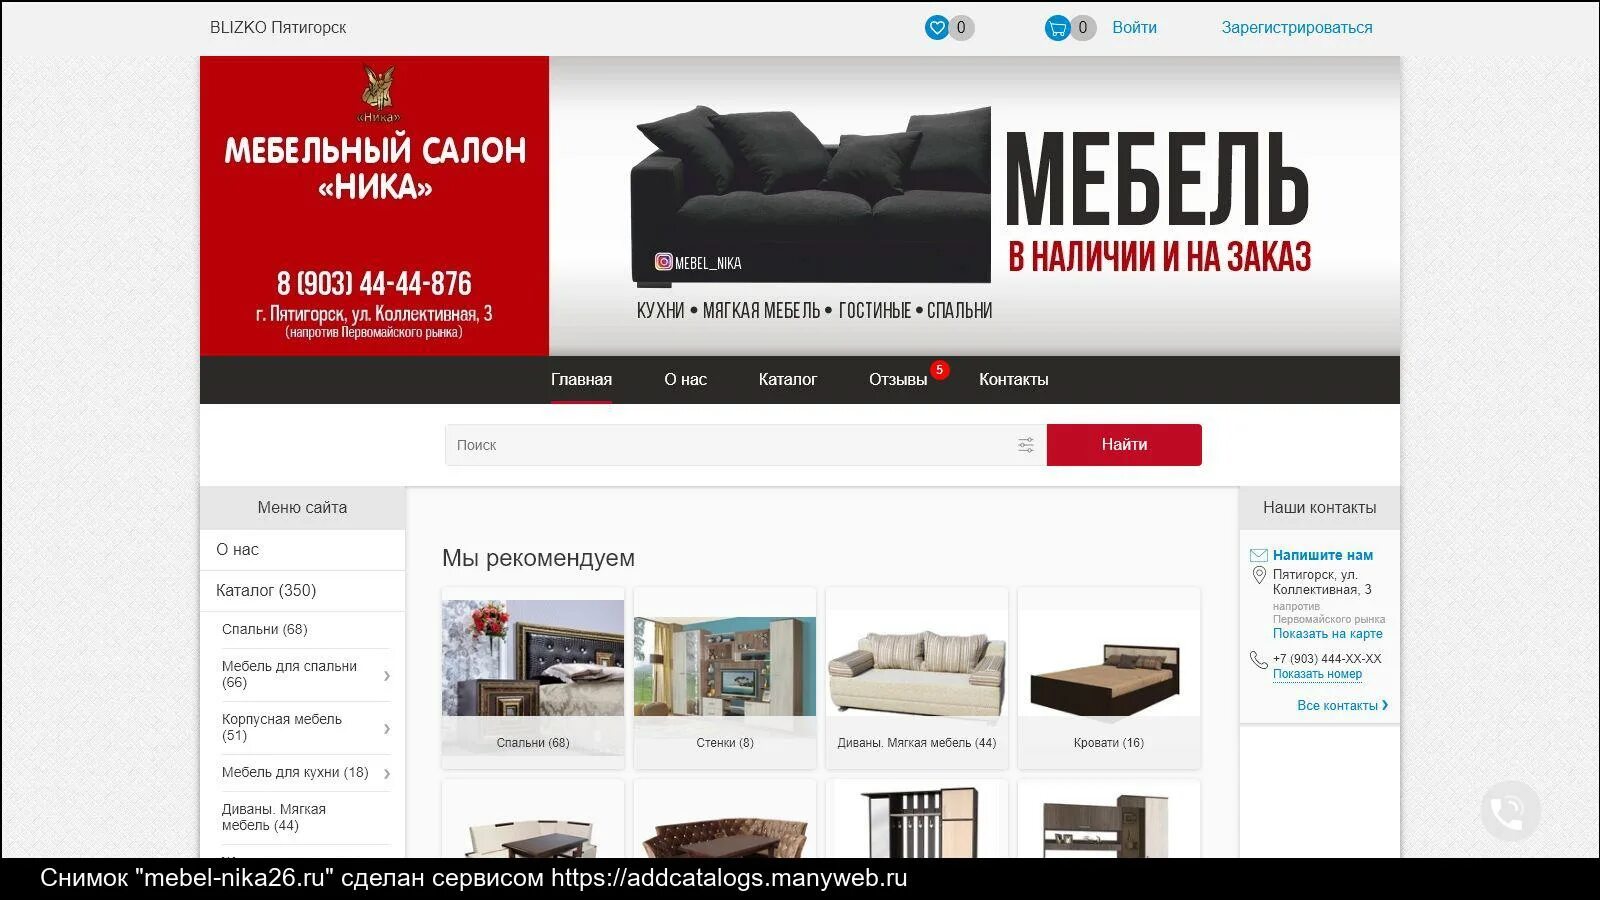 Топовые мебельные компании в России. Мебельный салон Азербайджан. Мебельная компания статус. Мебель сайт казань